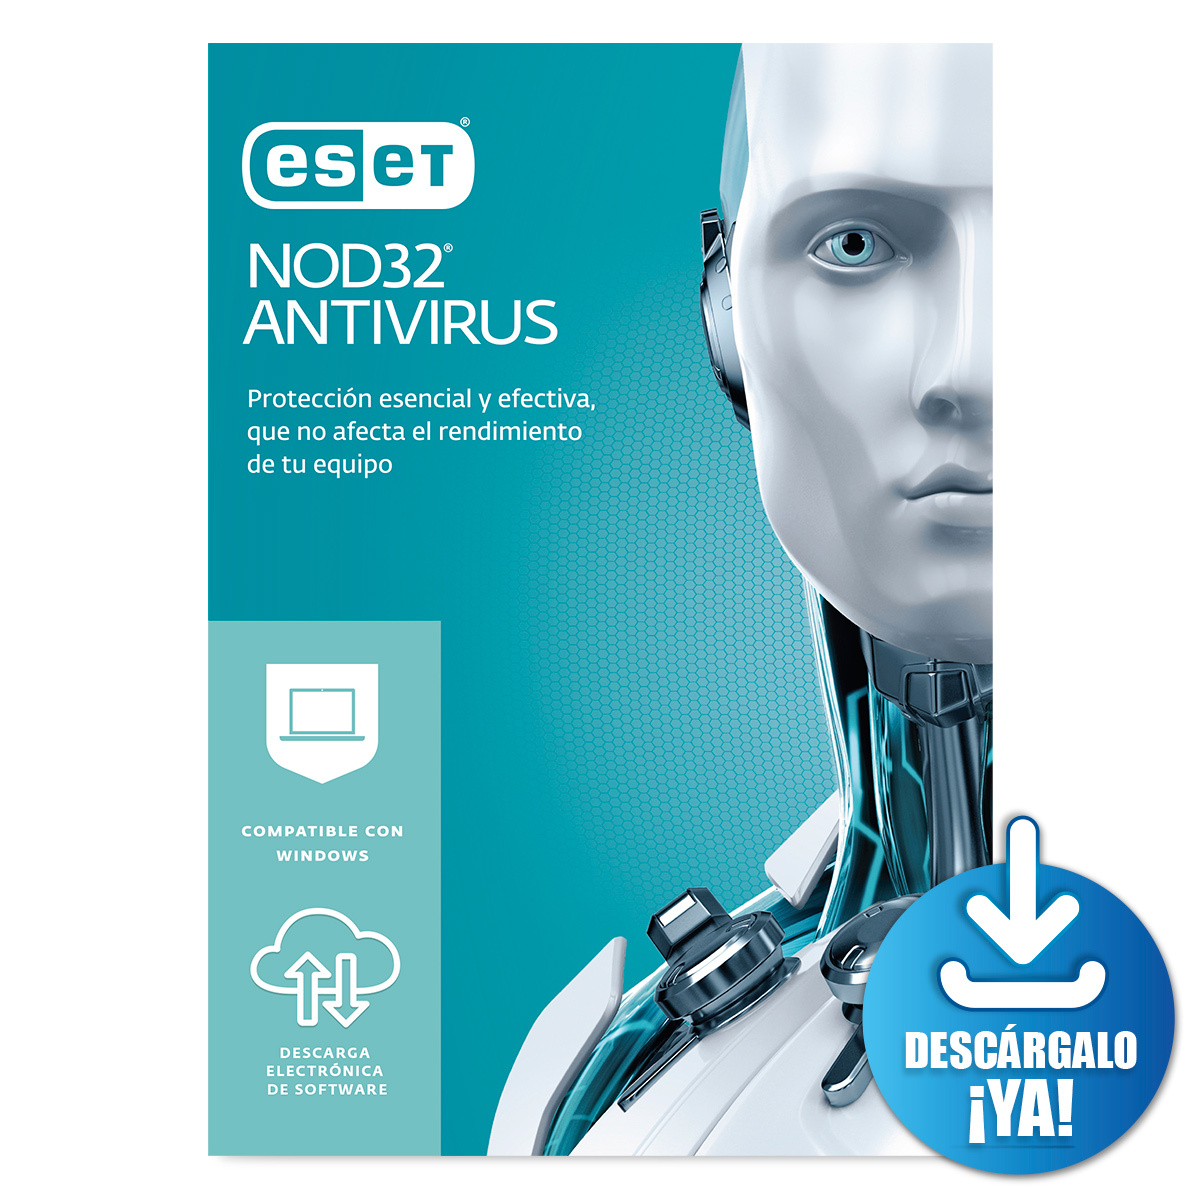 Antivirus ESET Nod32 Descargable / Licencia 2 años / 2 dispositivos / PC / Laptop